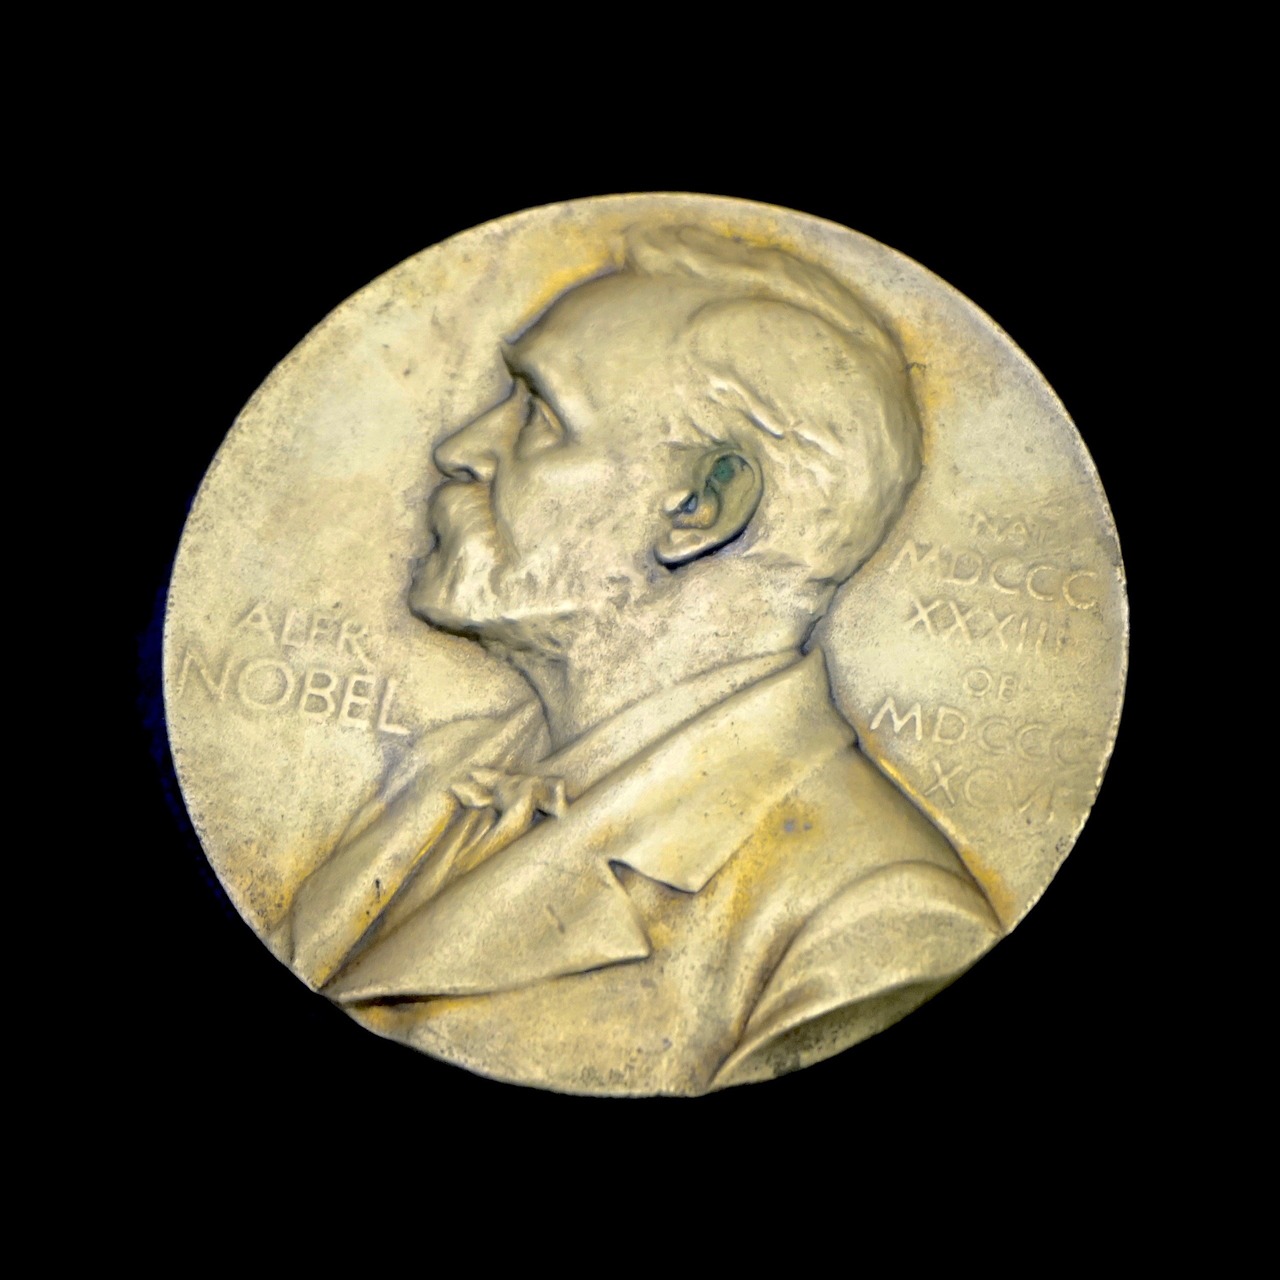 Co je Nobelova cena?